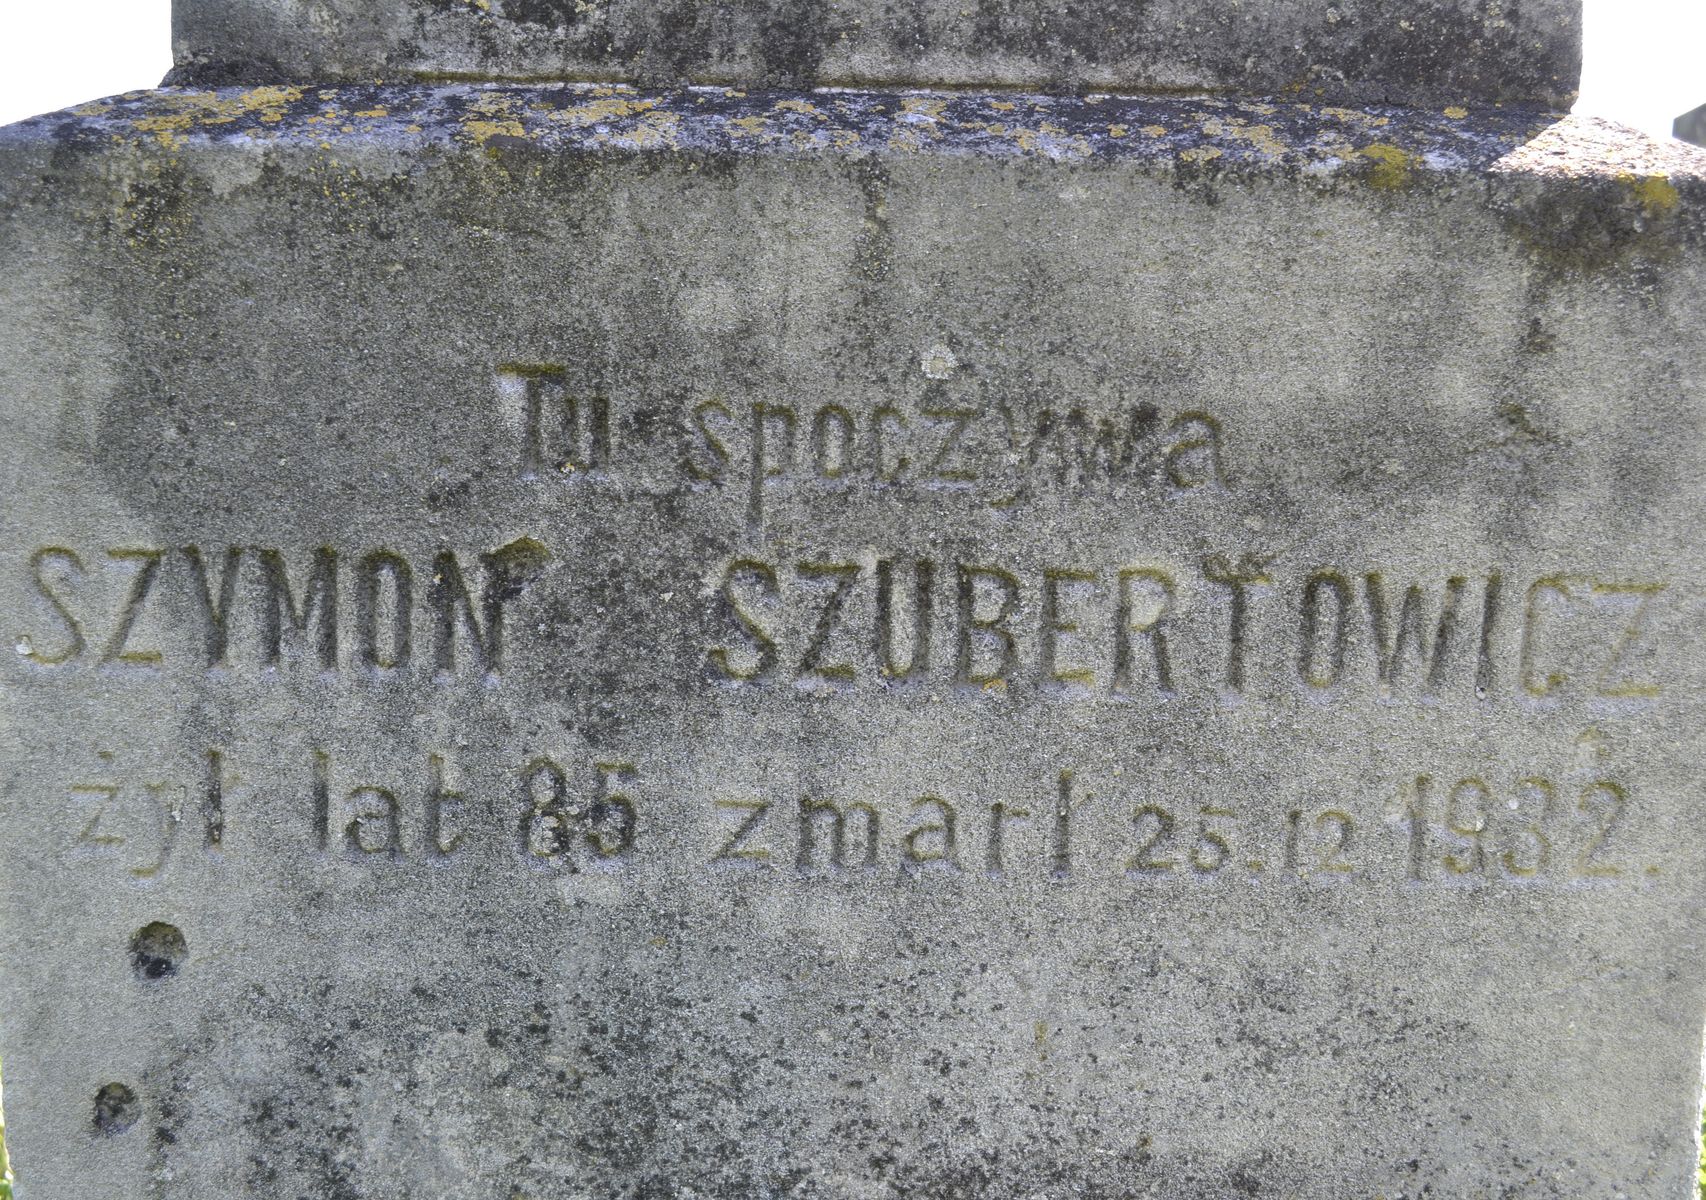 Inscription from the gravestone of Szymon Szubertowicz, cemetery in Łozowa